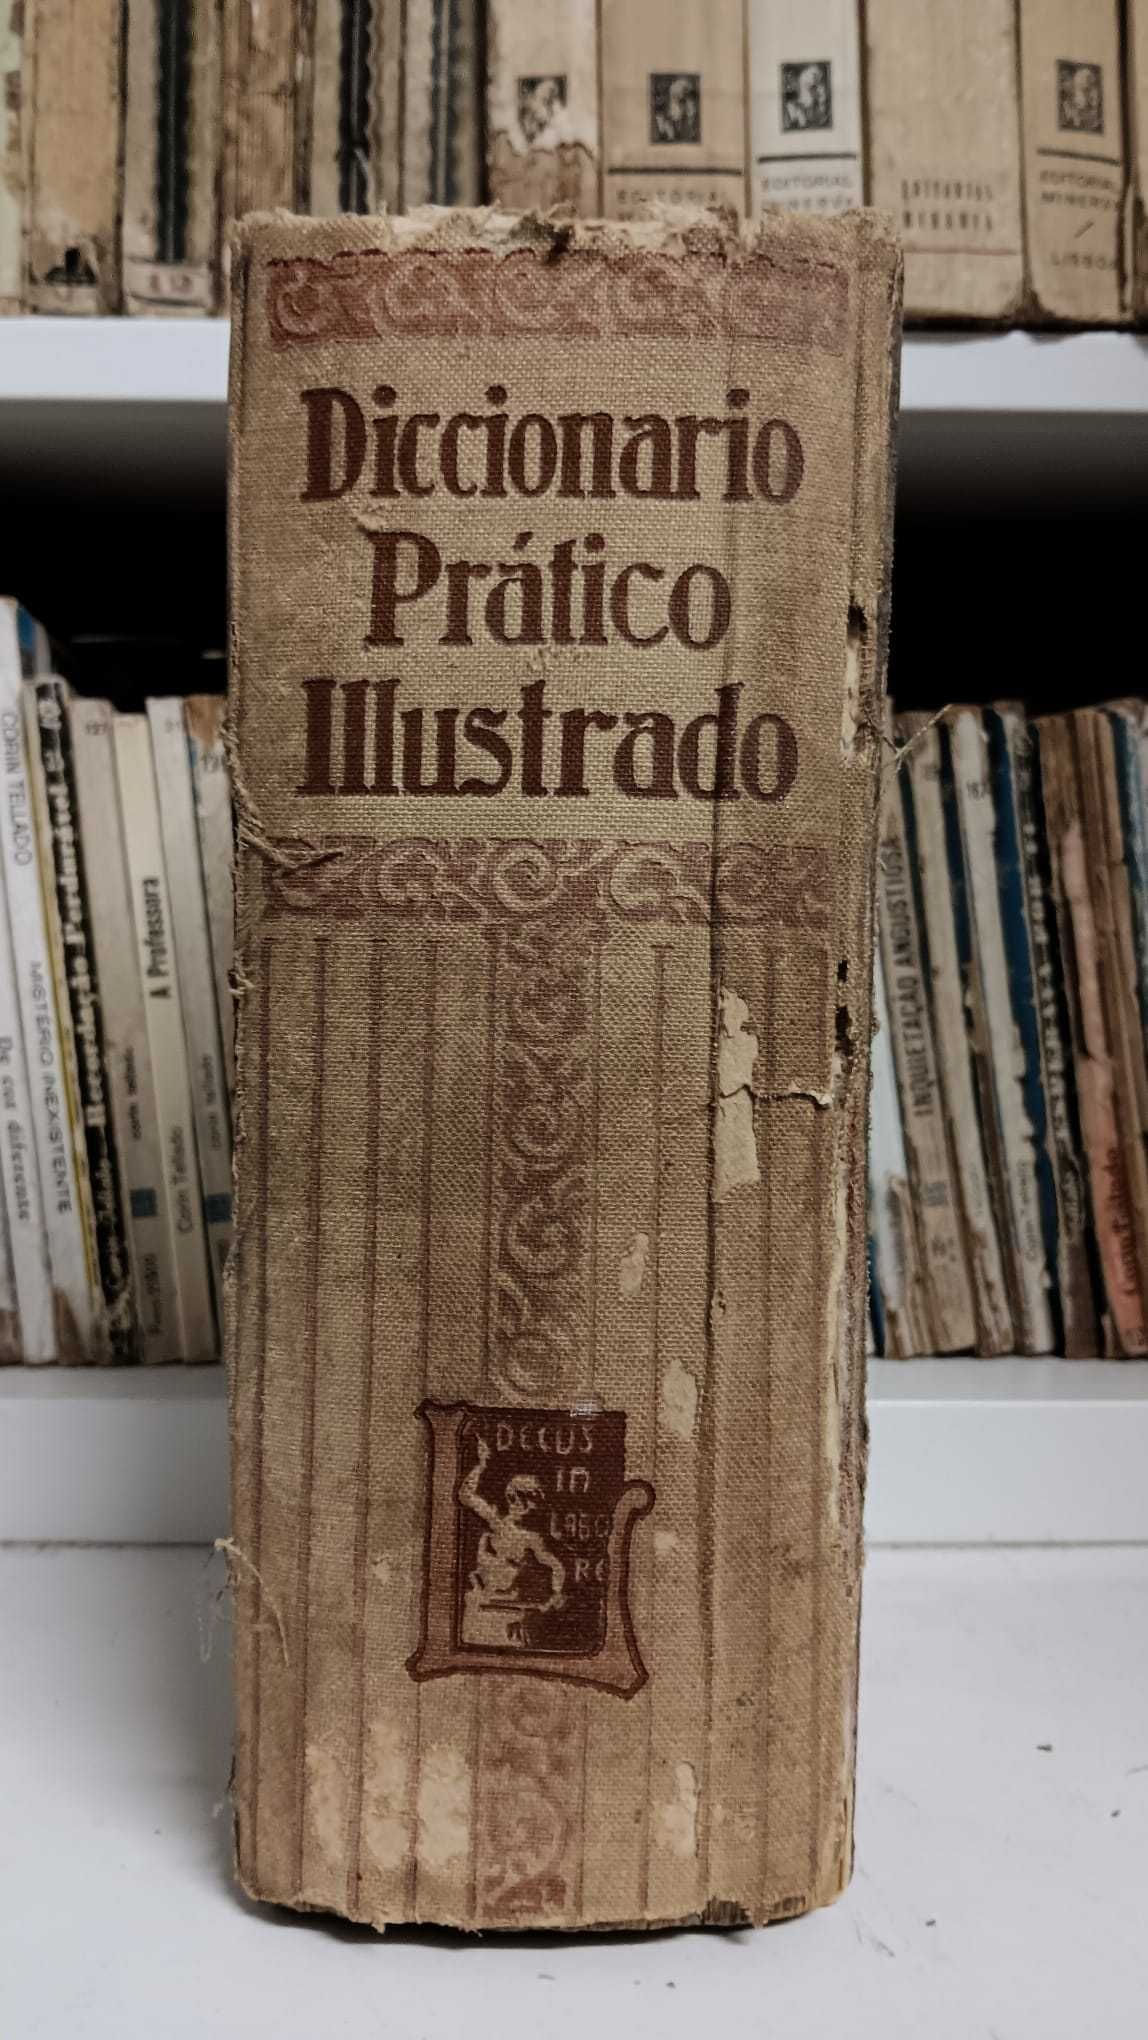 Dicionário pratico ilustrado (1944 colecionável)